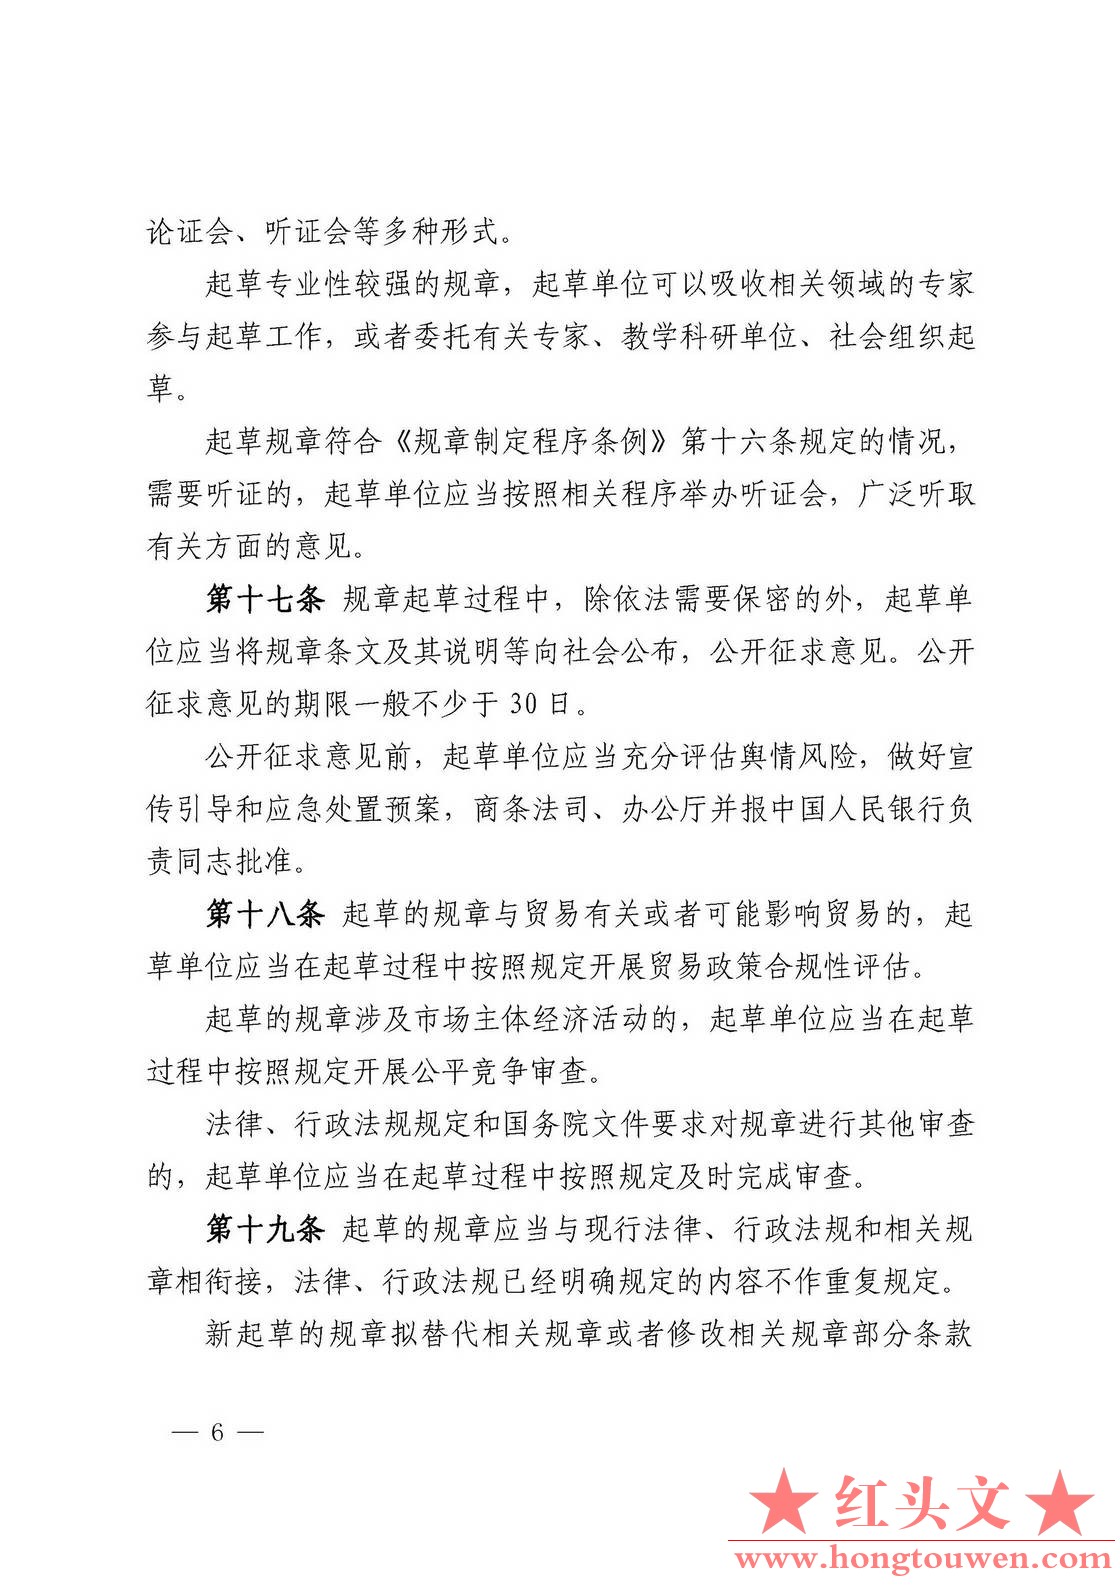 中国人民银行令[2018]3号-中国人民银行规章制定程序与管理规定_页面_06.jpg.jpg